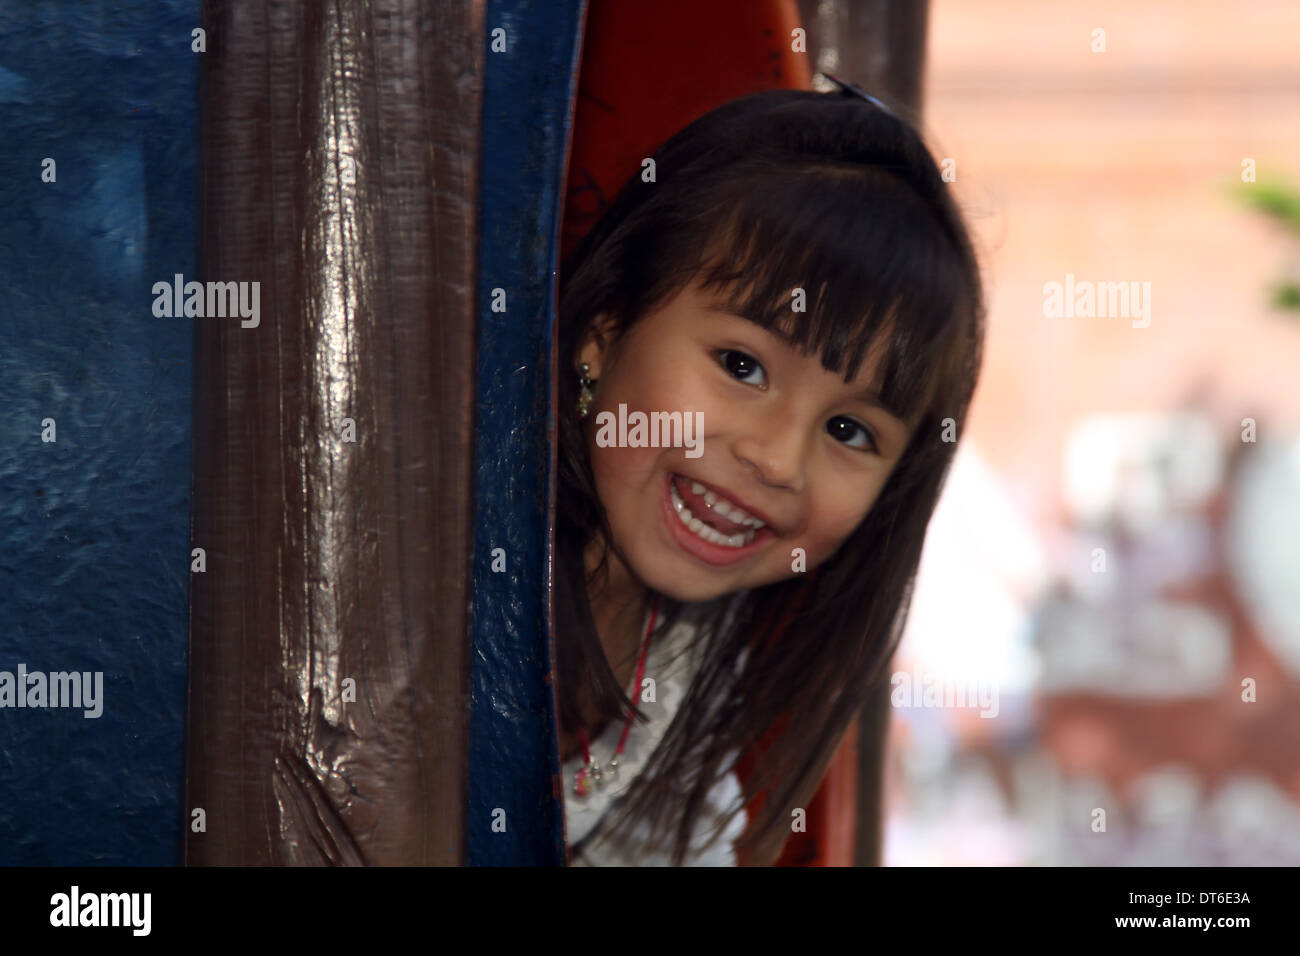 Little girl smiling Stock Photo